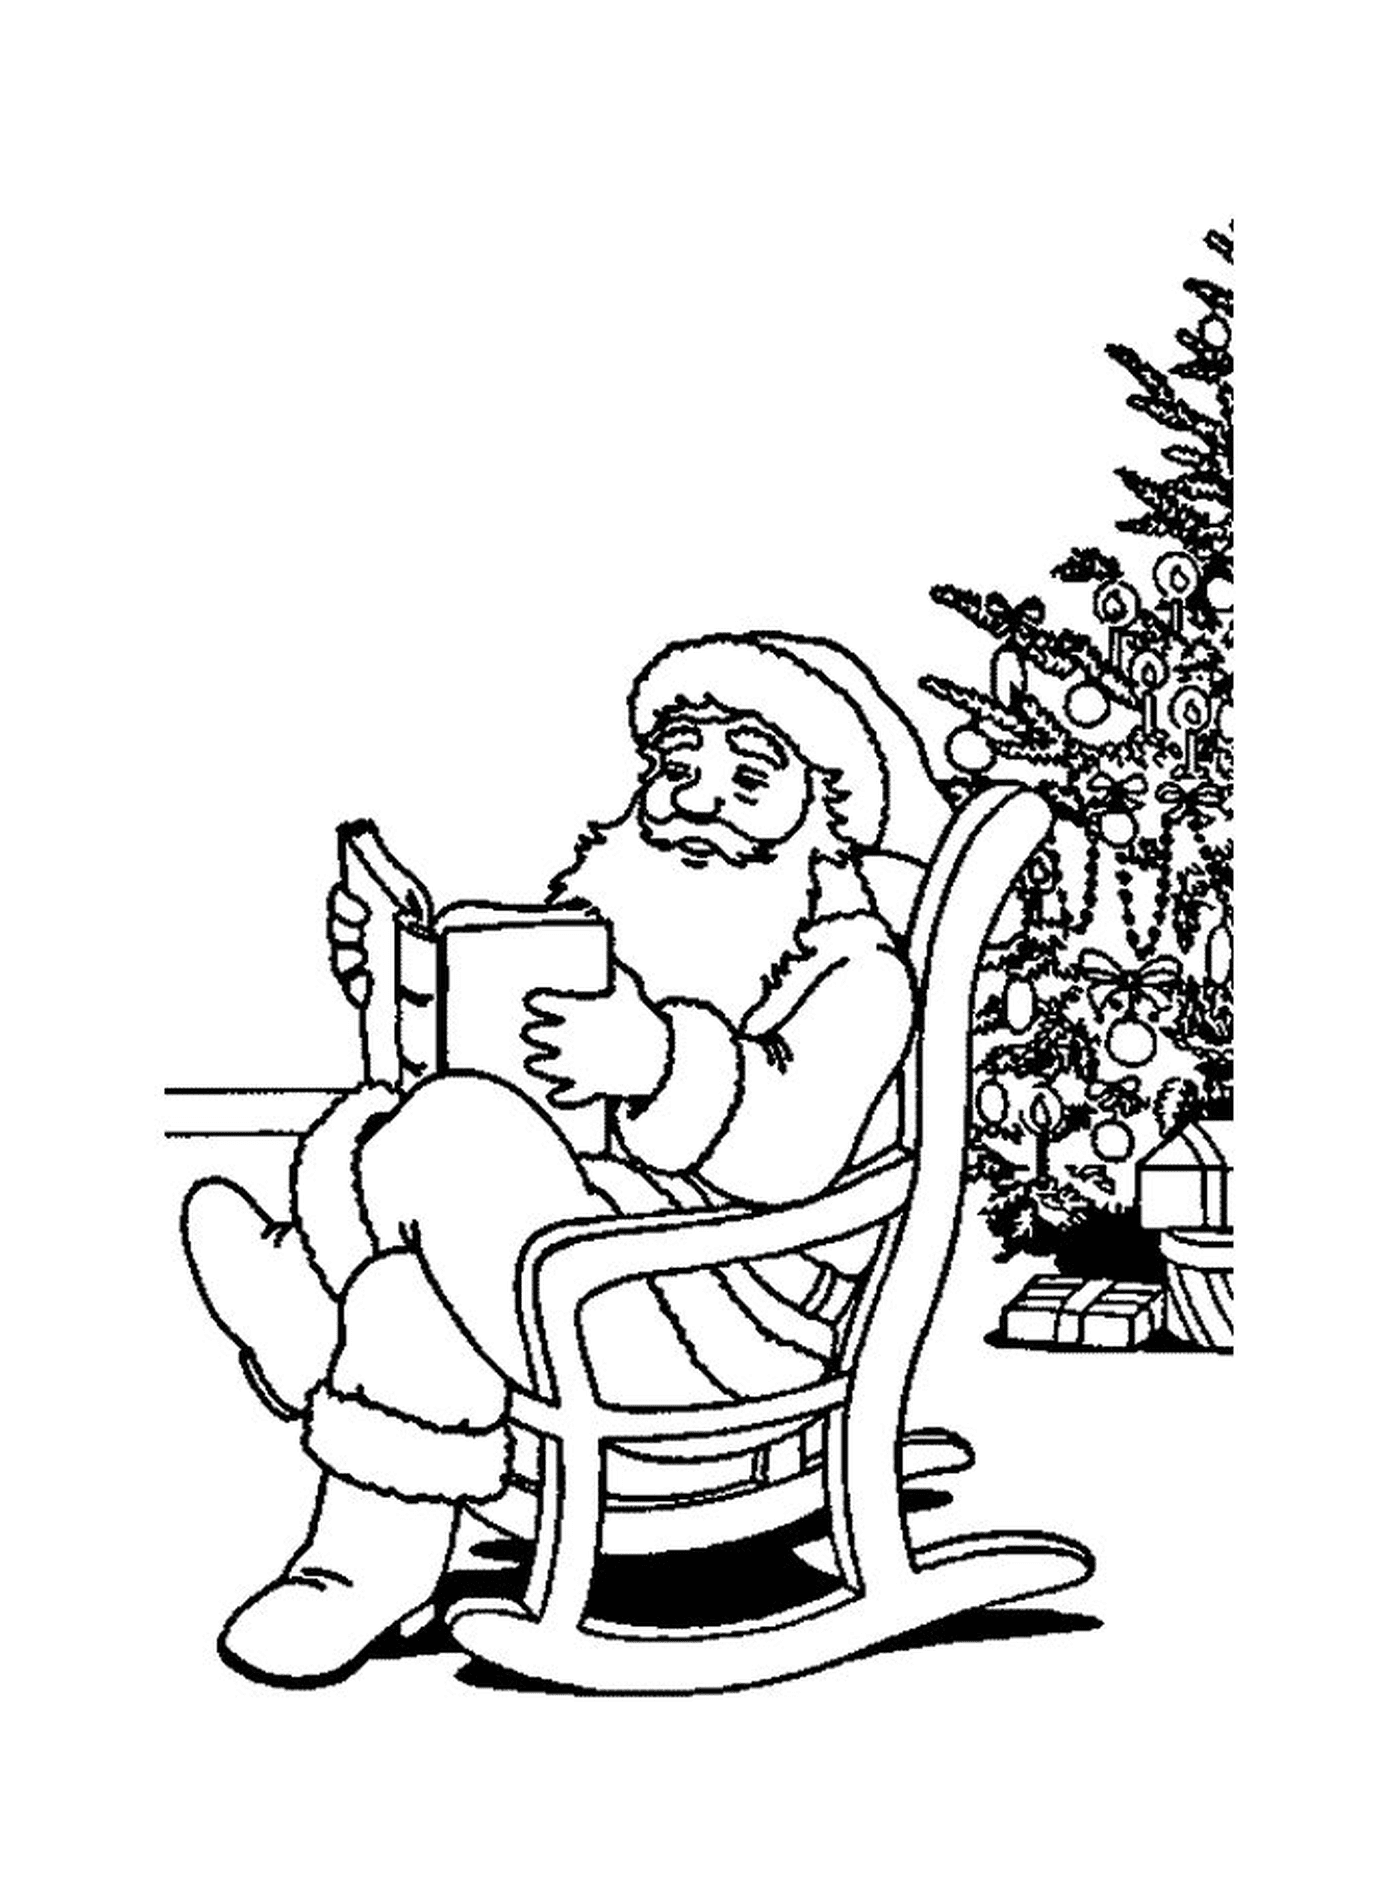  Weihnachtsmann liest ein Buch an einem Baum 